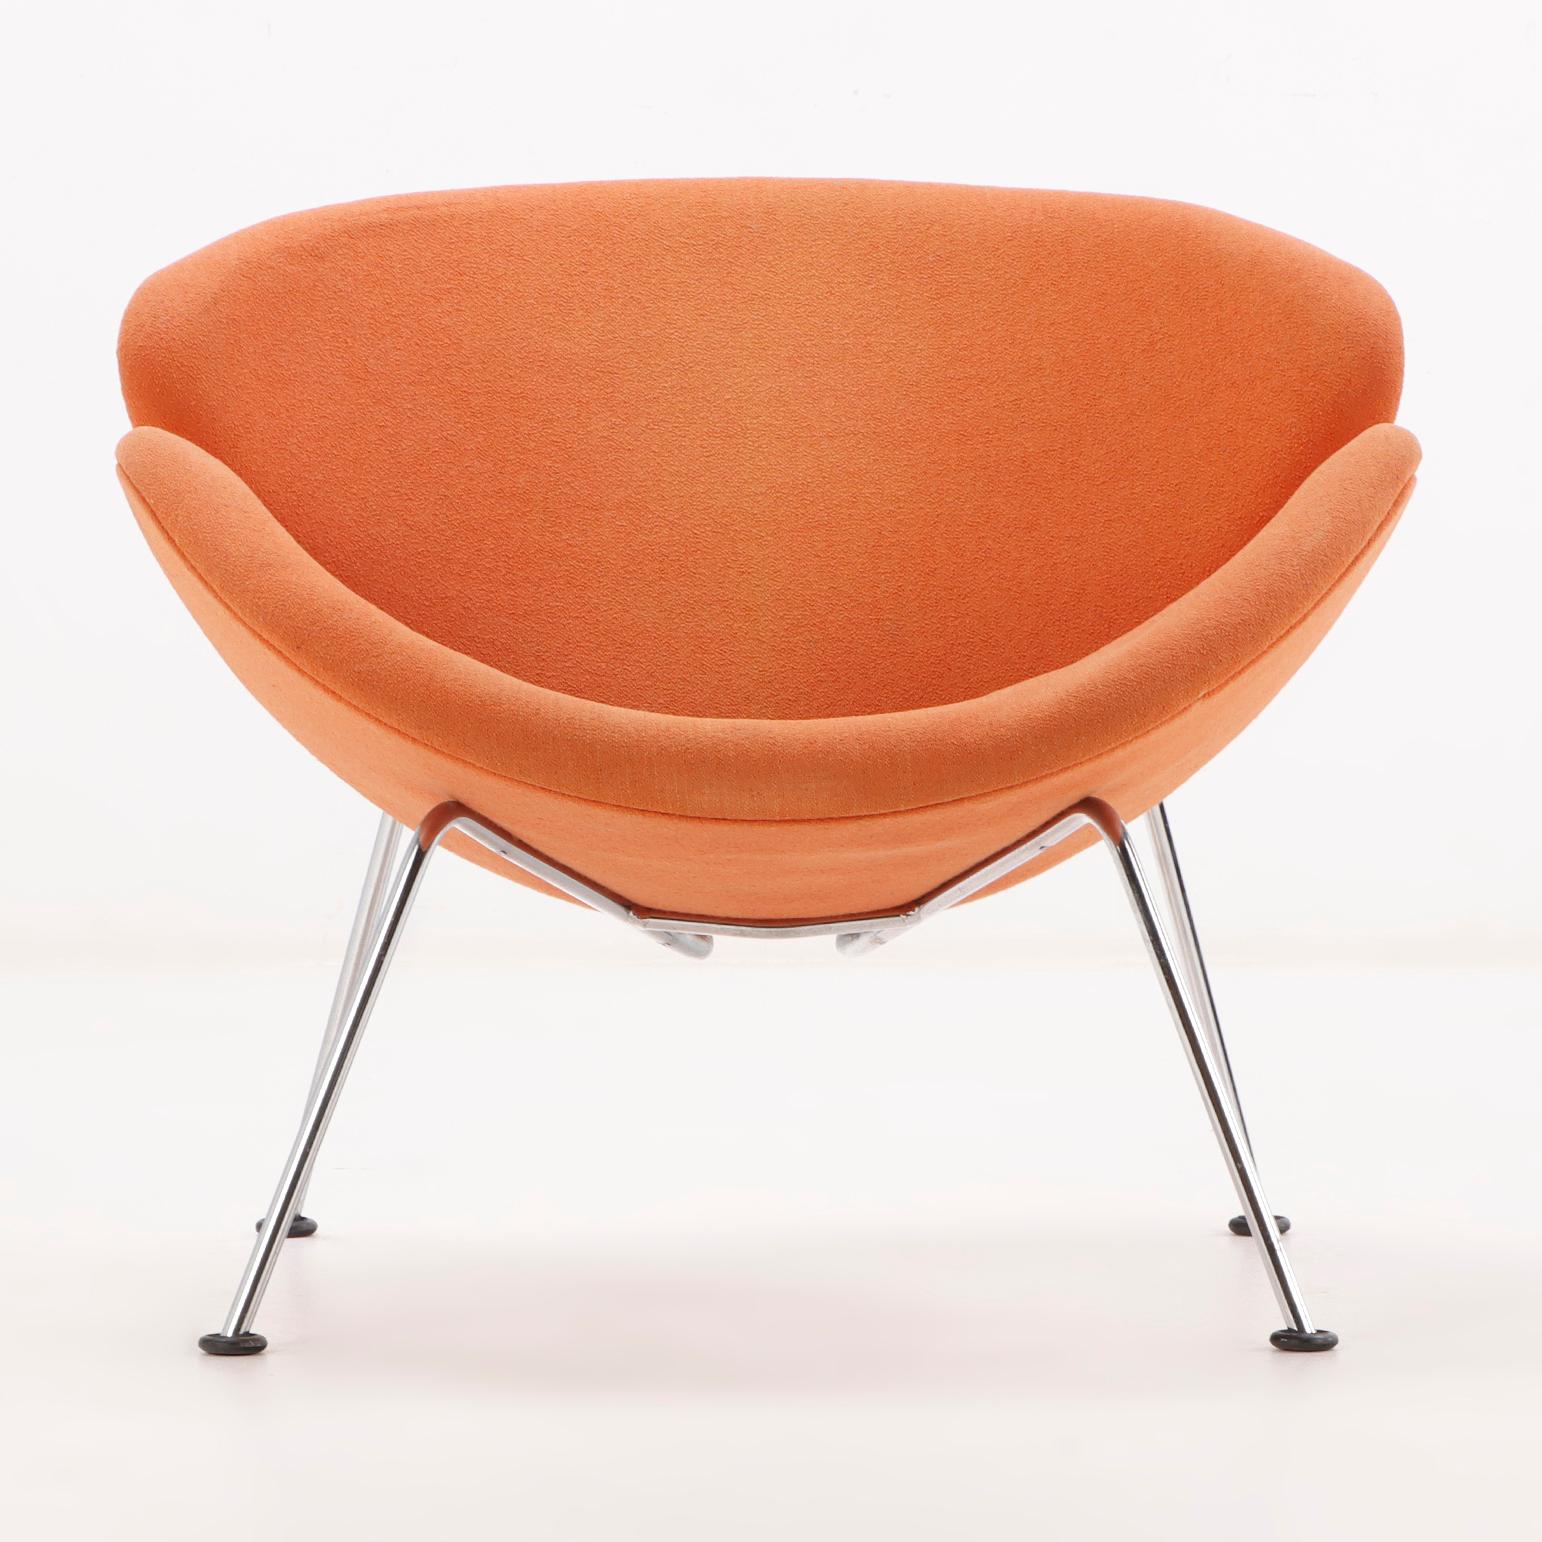 Ein Paar gepolsterte Stühle im Stil von Pierre Paulin, gepolstert, verchromt, orangefarben, in Scheiben geschnitten.  